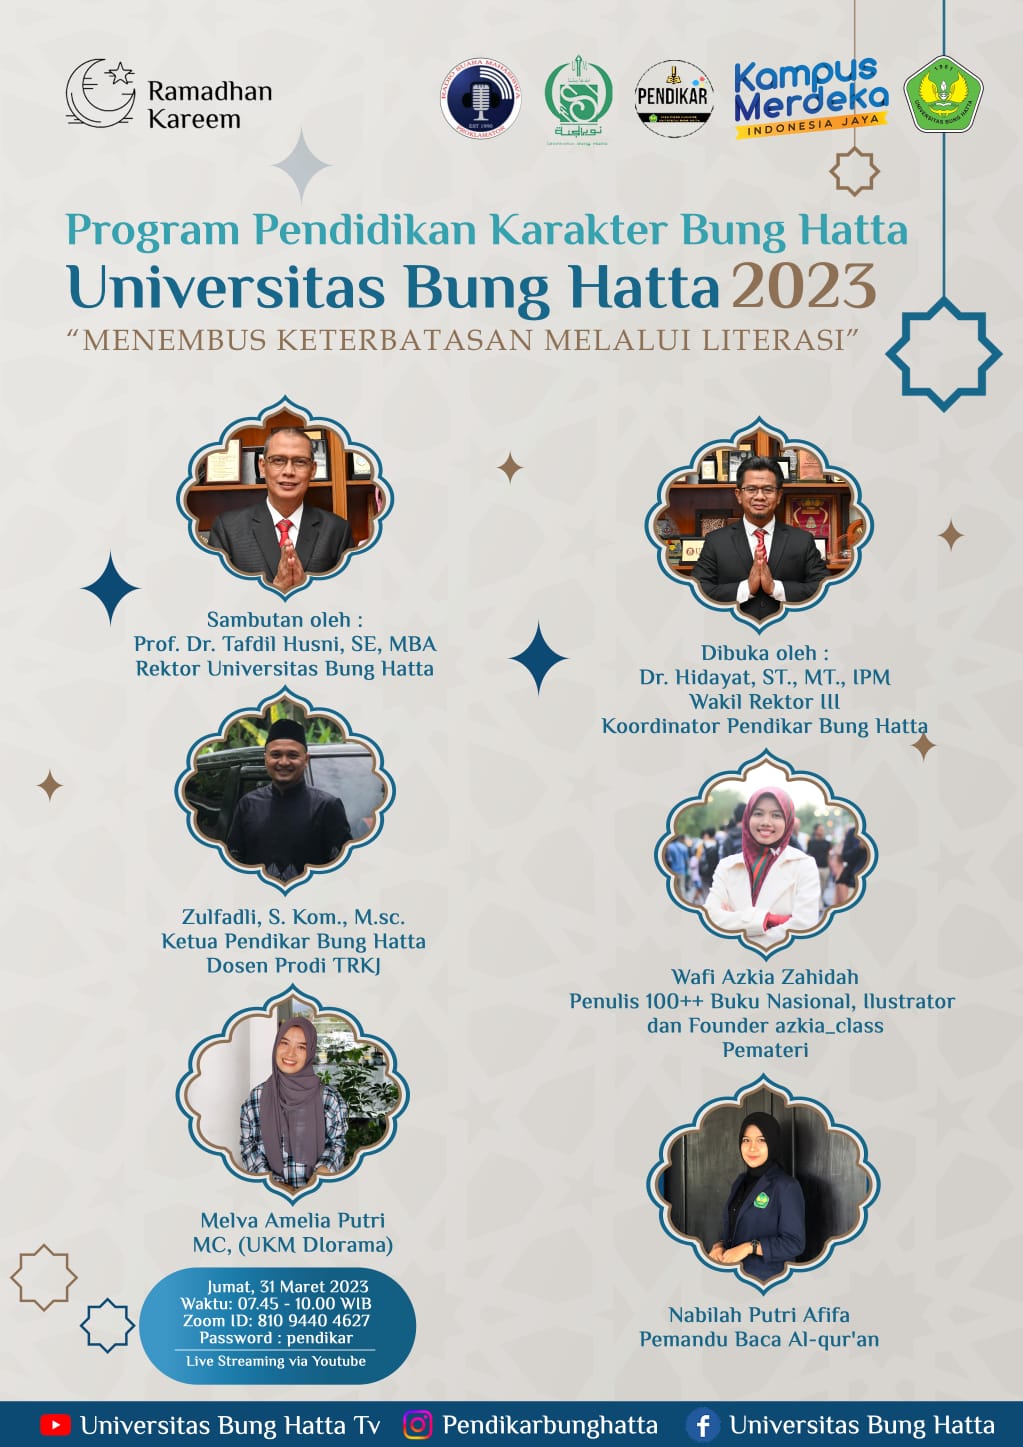 Penulis +100 Buku Nasional Hadir untuk Mahasiswa Universitas Bung Hatta 